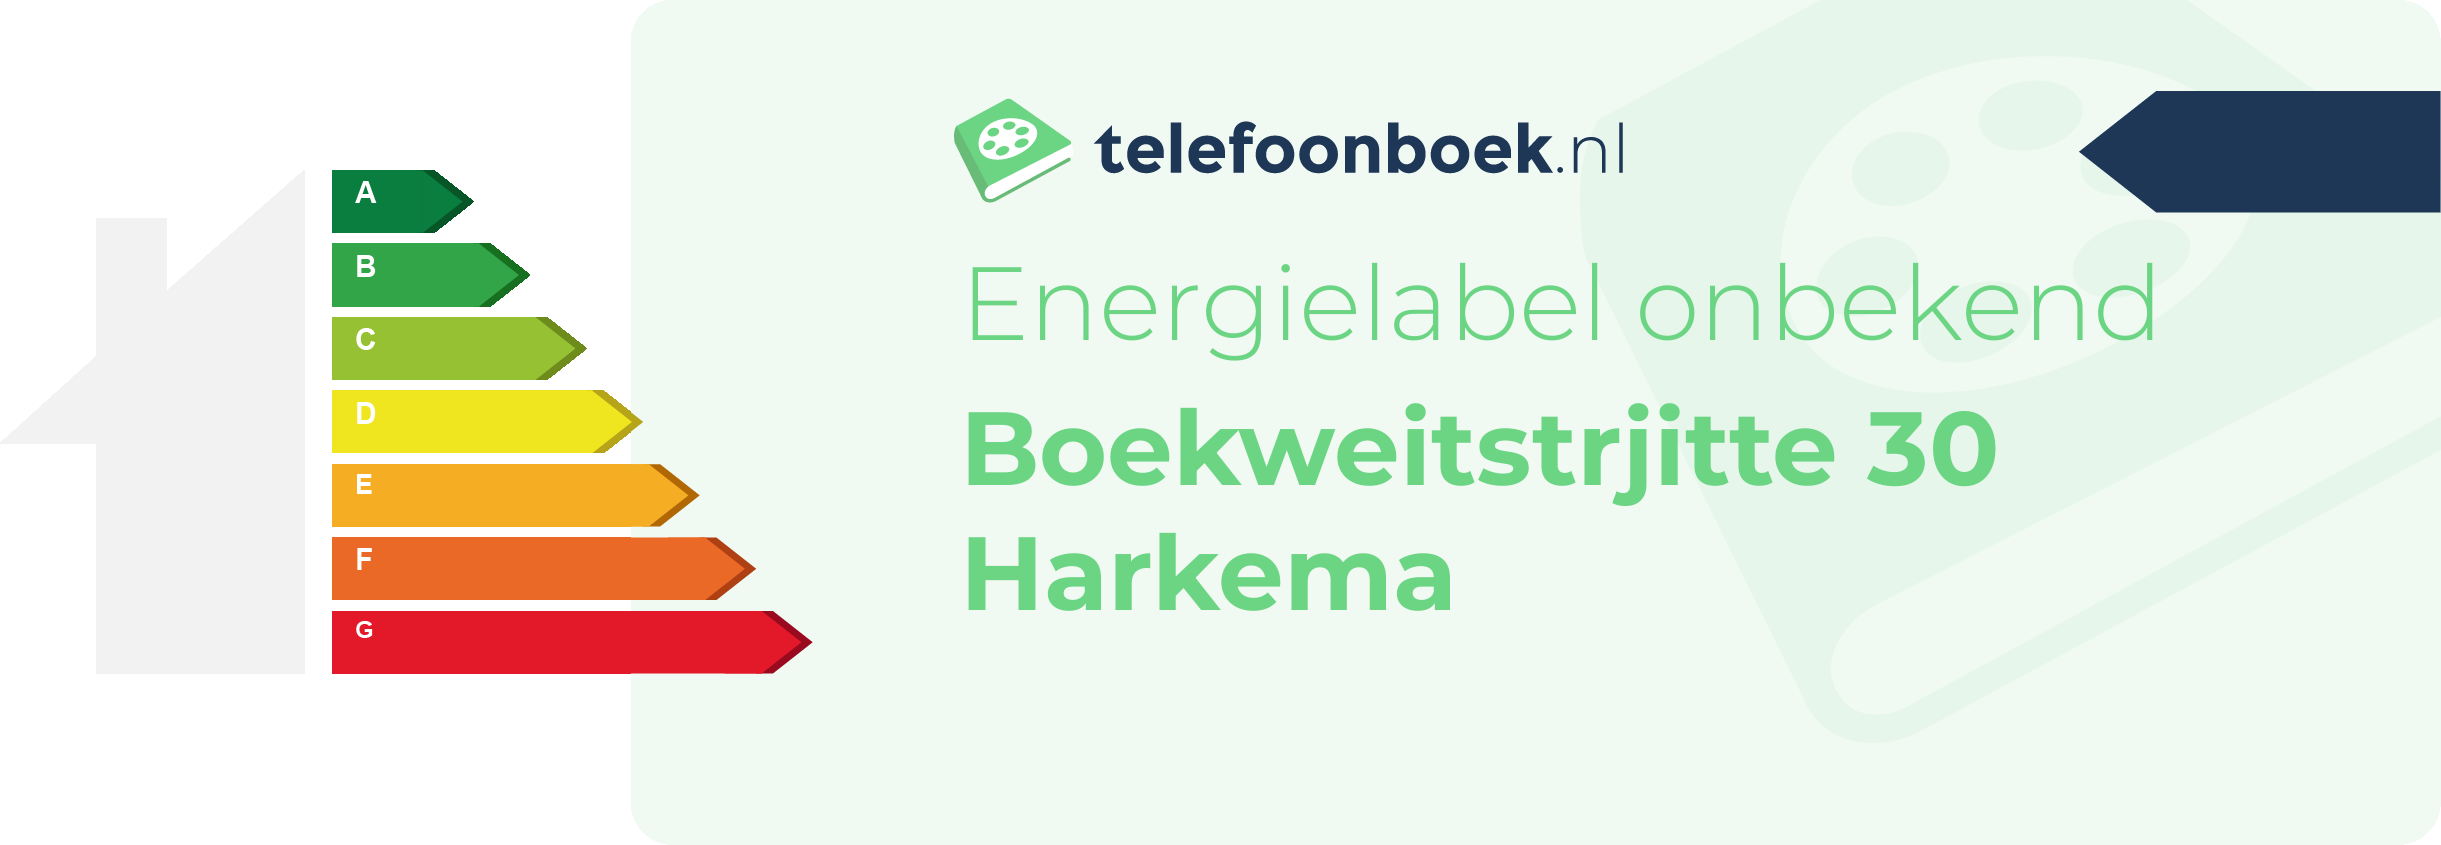 Energielabel Boekweitstrjitte 30 Harkema